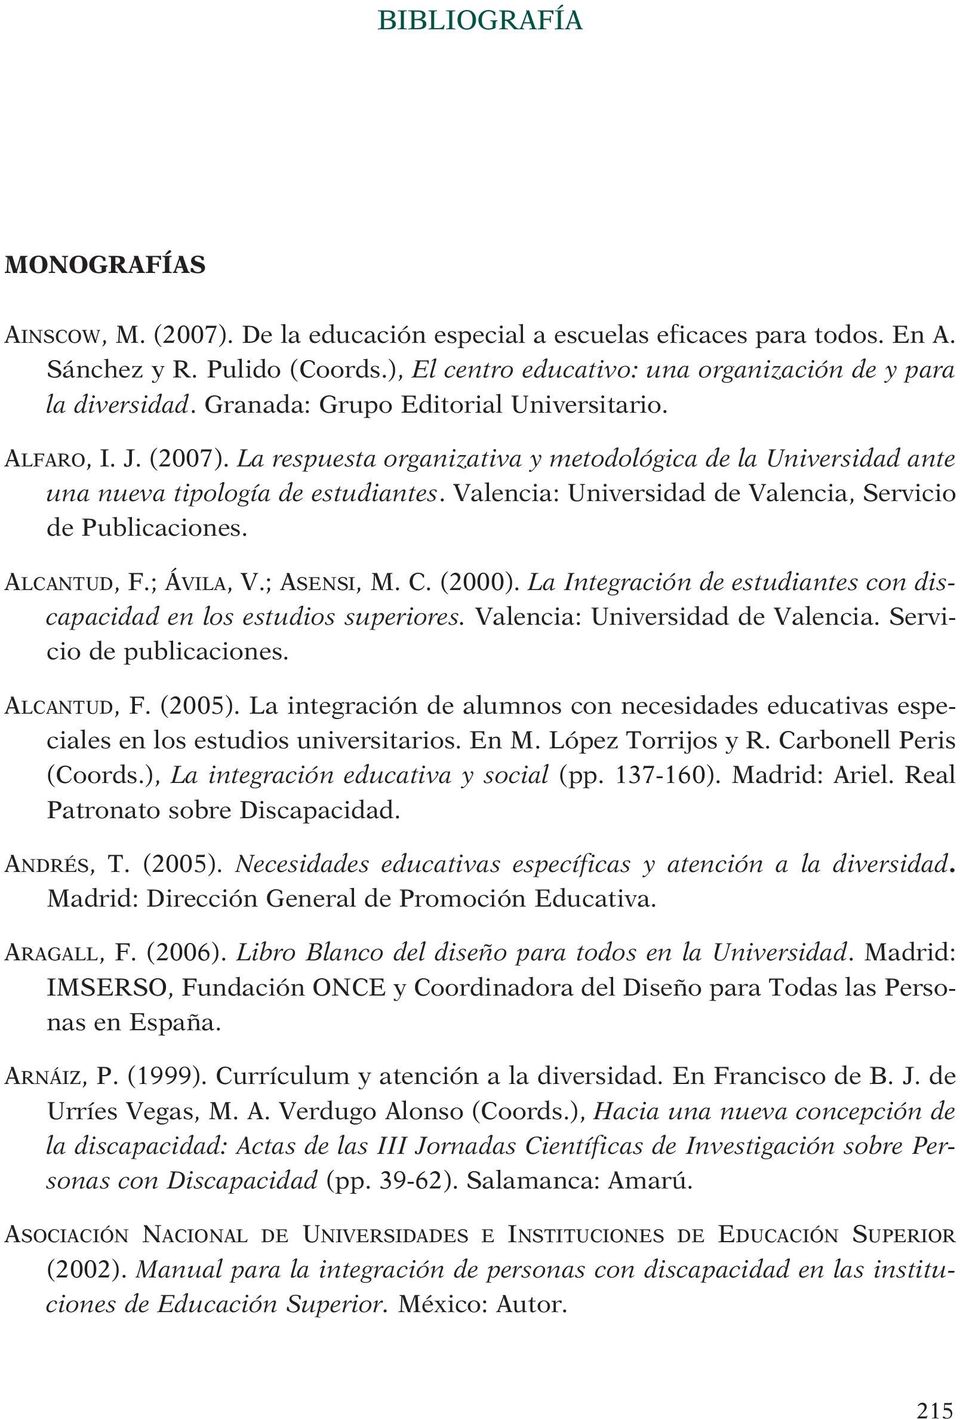 Valencia: Universidad de Valencia, Servicio de Publicaciones. ALCANTUD, F.; ÁVILA, V.; ASENSI, M. C. (2000). La Integración de estudiantes con discapacidad en los estudios superiores.